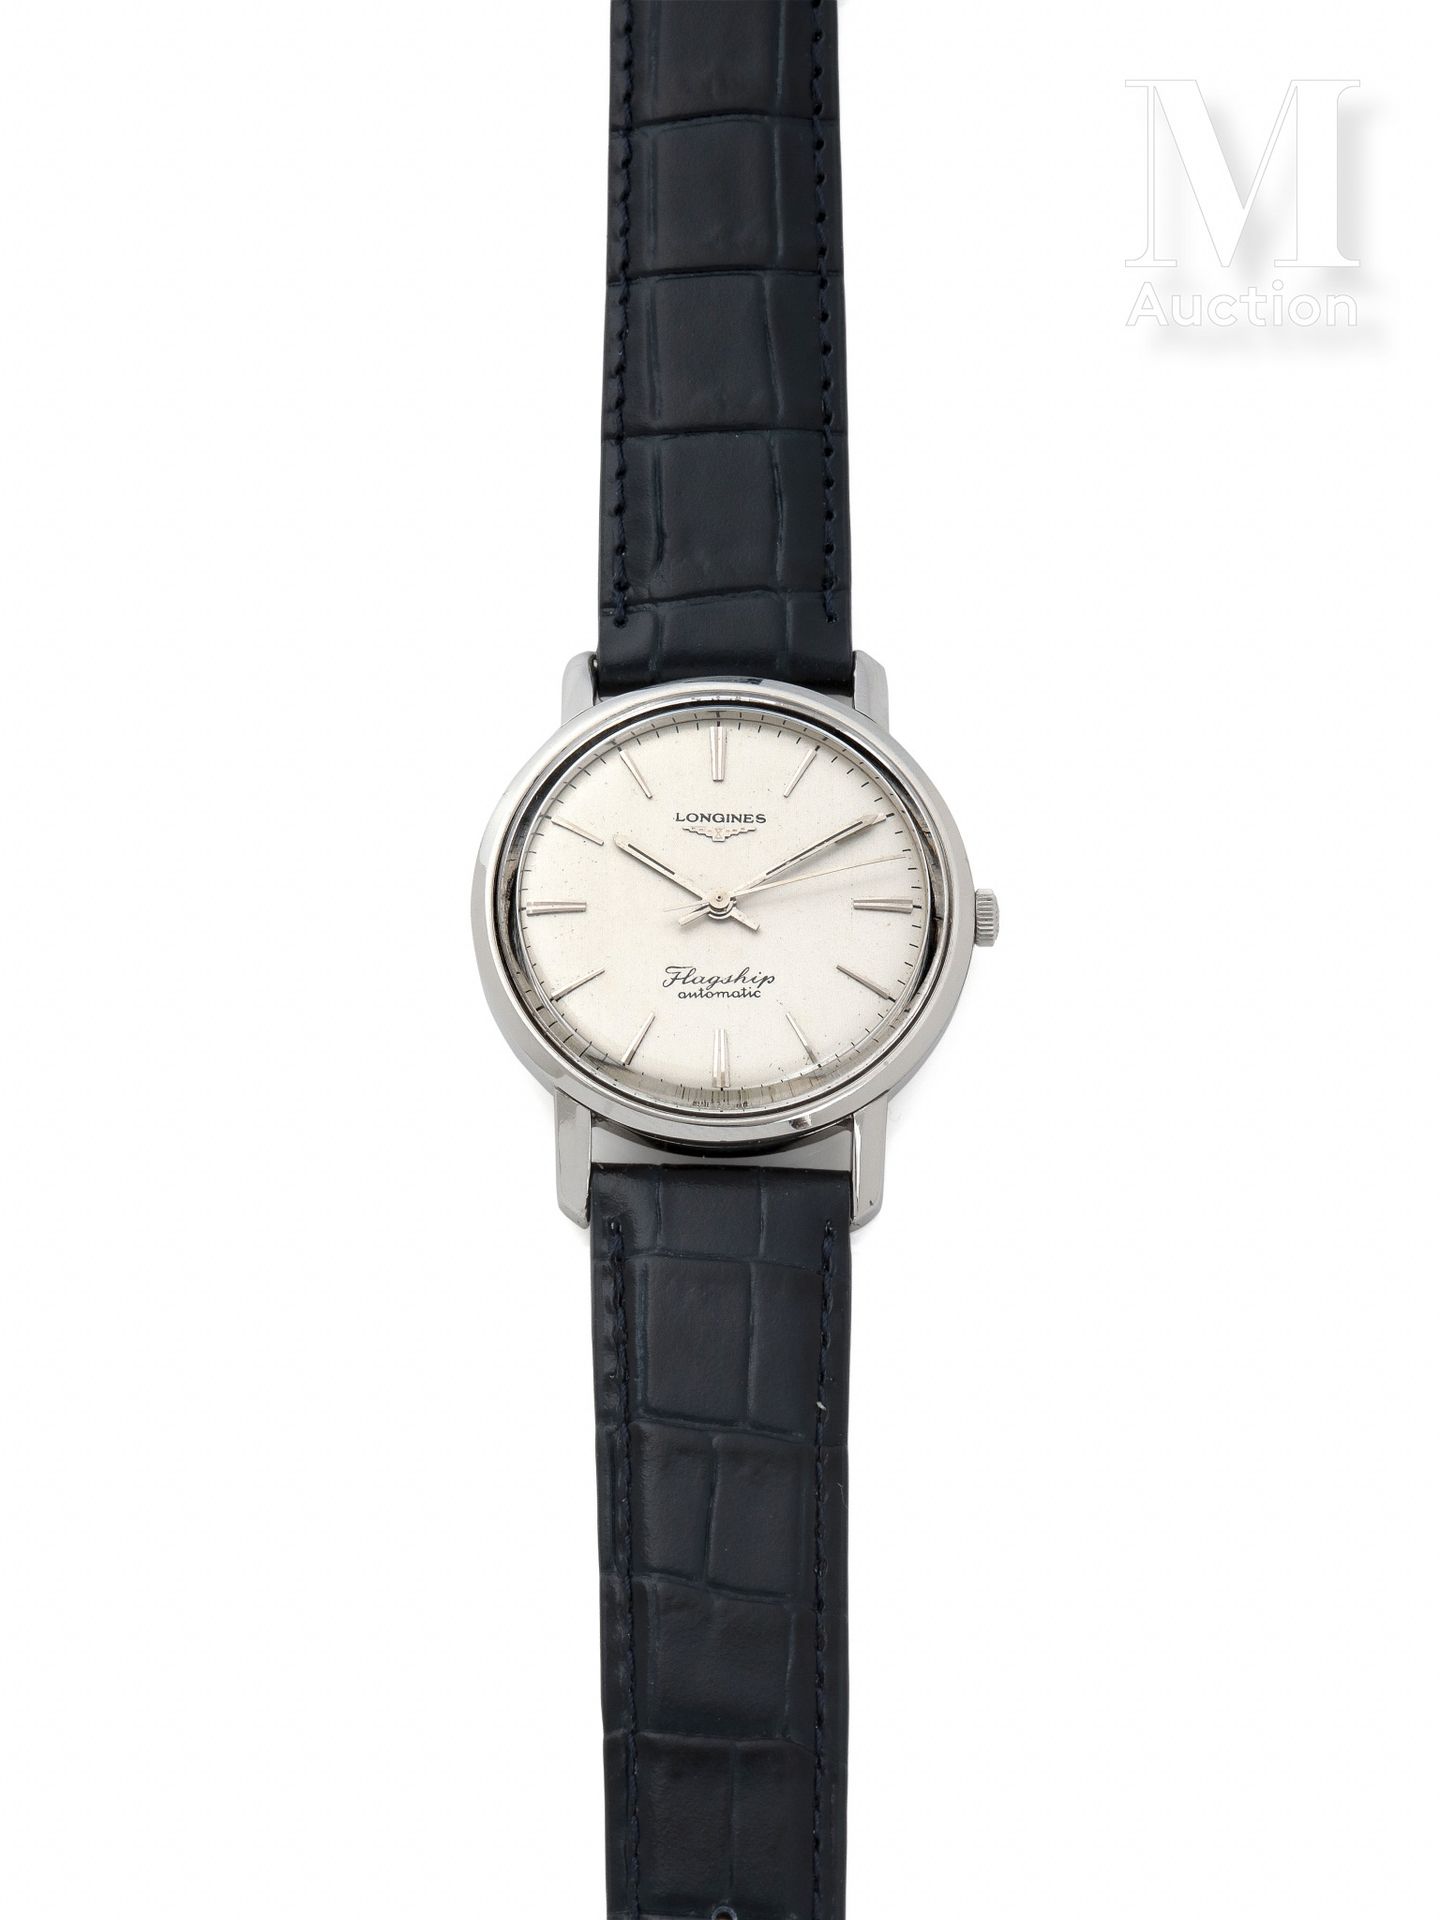 LONGINES 旗舰店

目录编号: 3104

约1960年

钢制圆形男士手表。

银色表盘上有指挥棒标记。中心秒针。有机玻璃的玻璃。

340型自动上链&hellip;